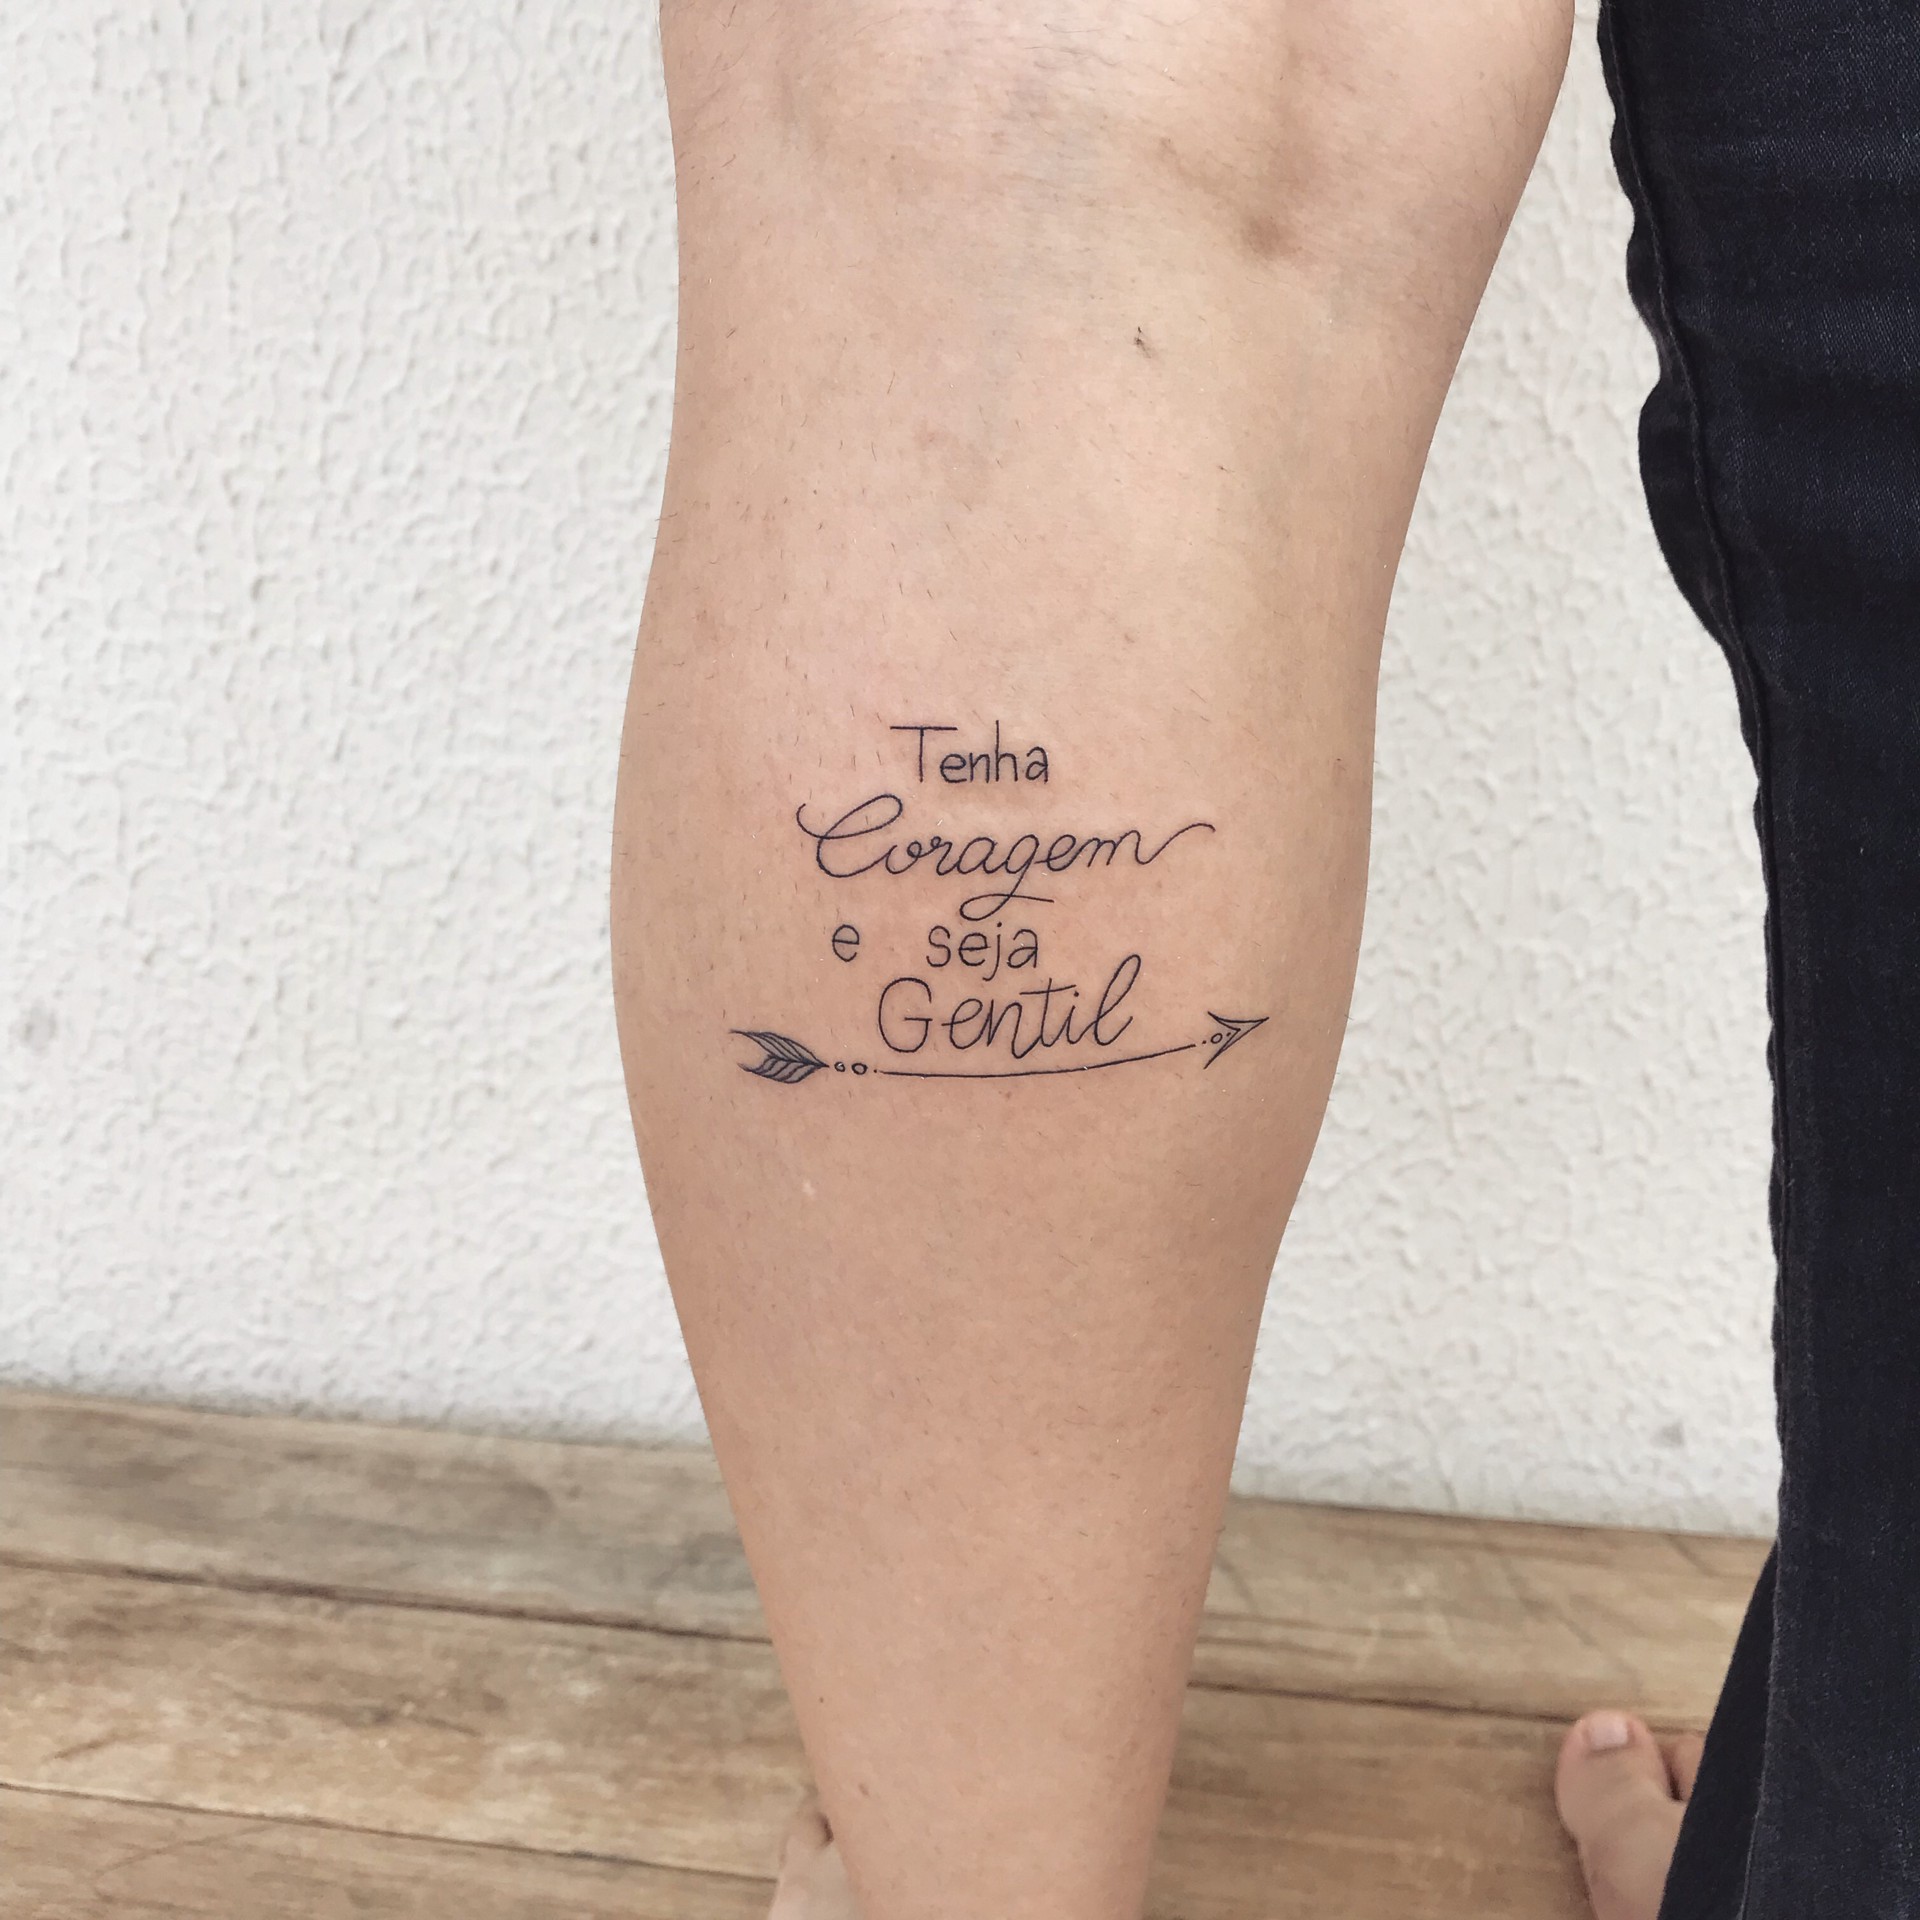 Tatuagens de frases: onde fazer e o que tatuar - Blog Tattoo2me